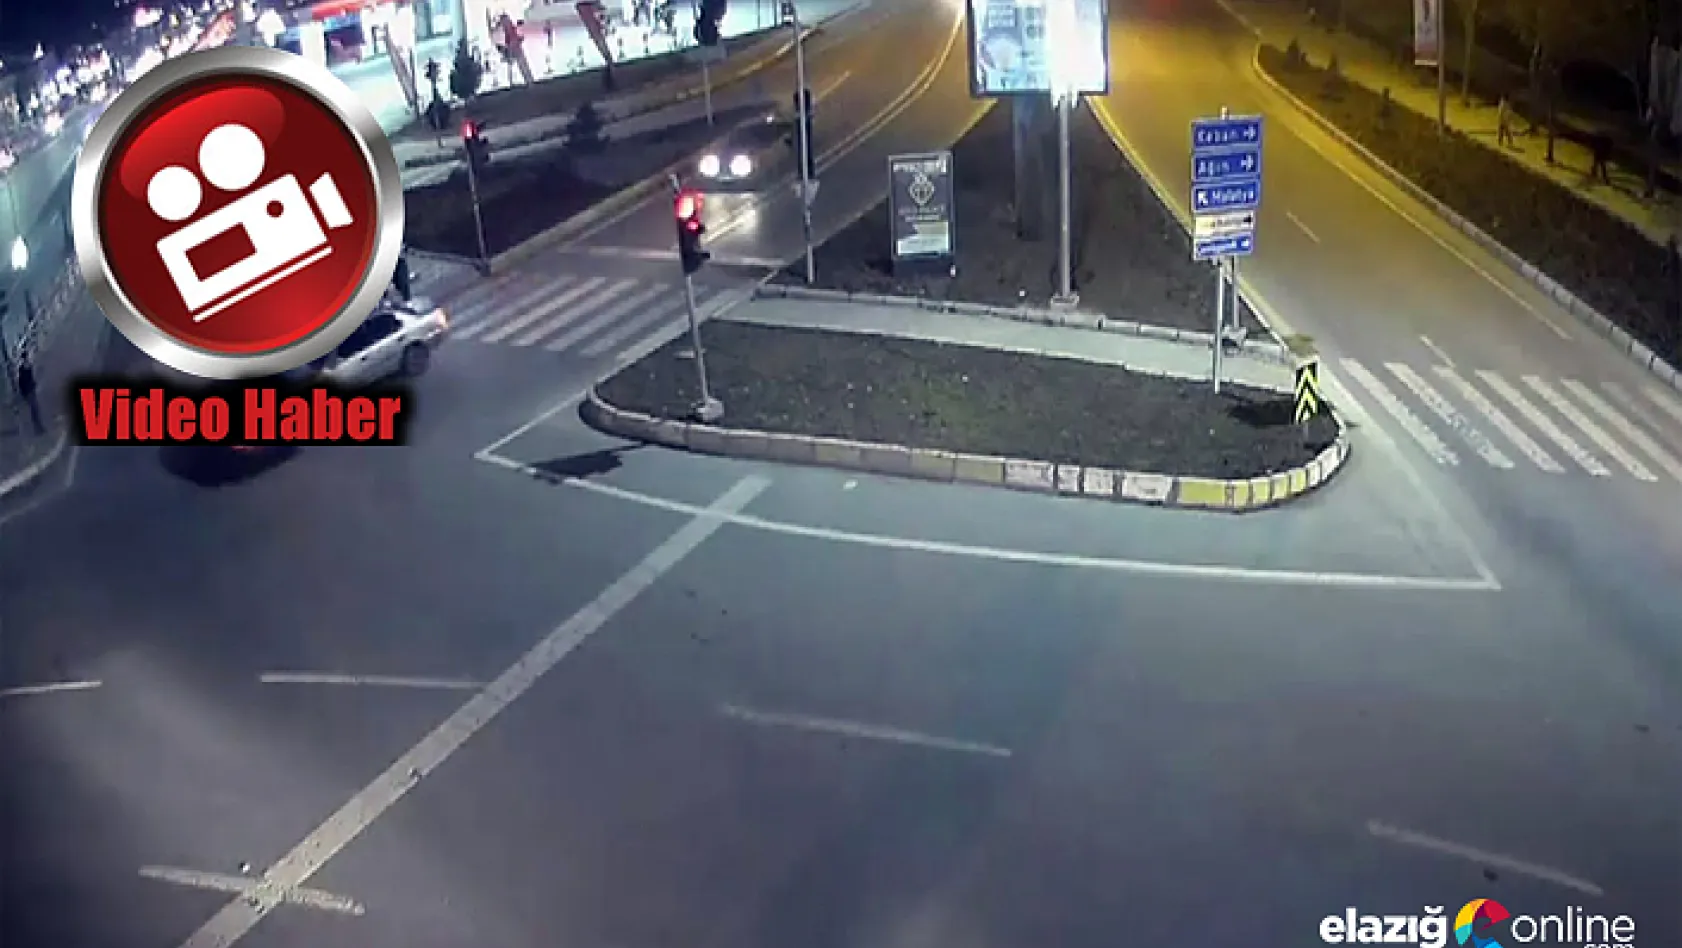 Elazığ ve Bingöl'de trafik kazaları kameraya yansıdı